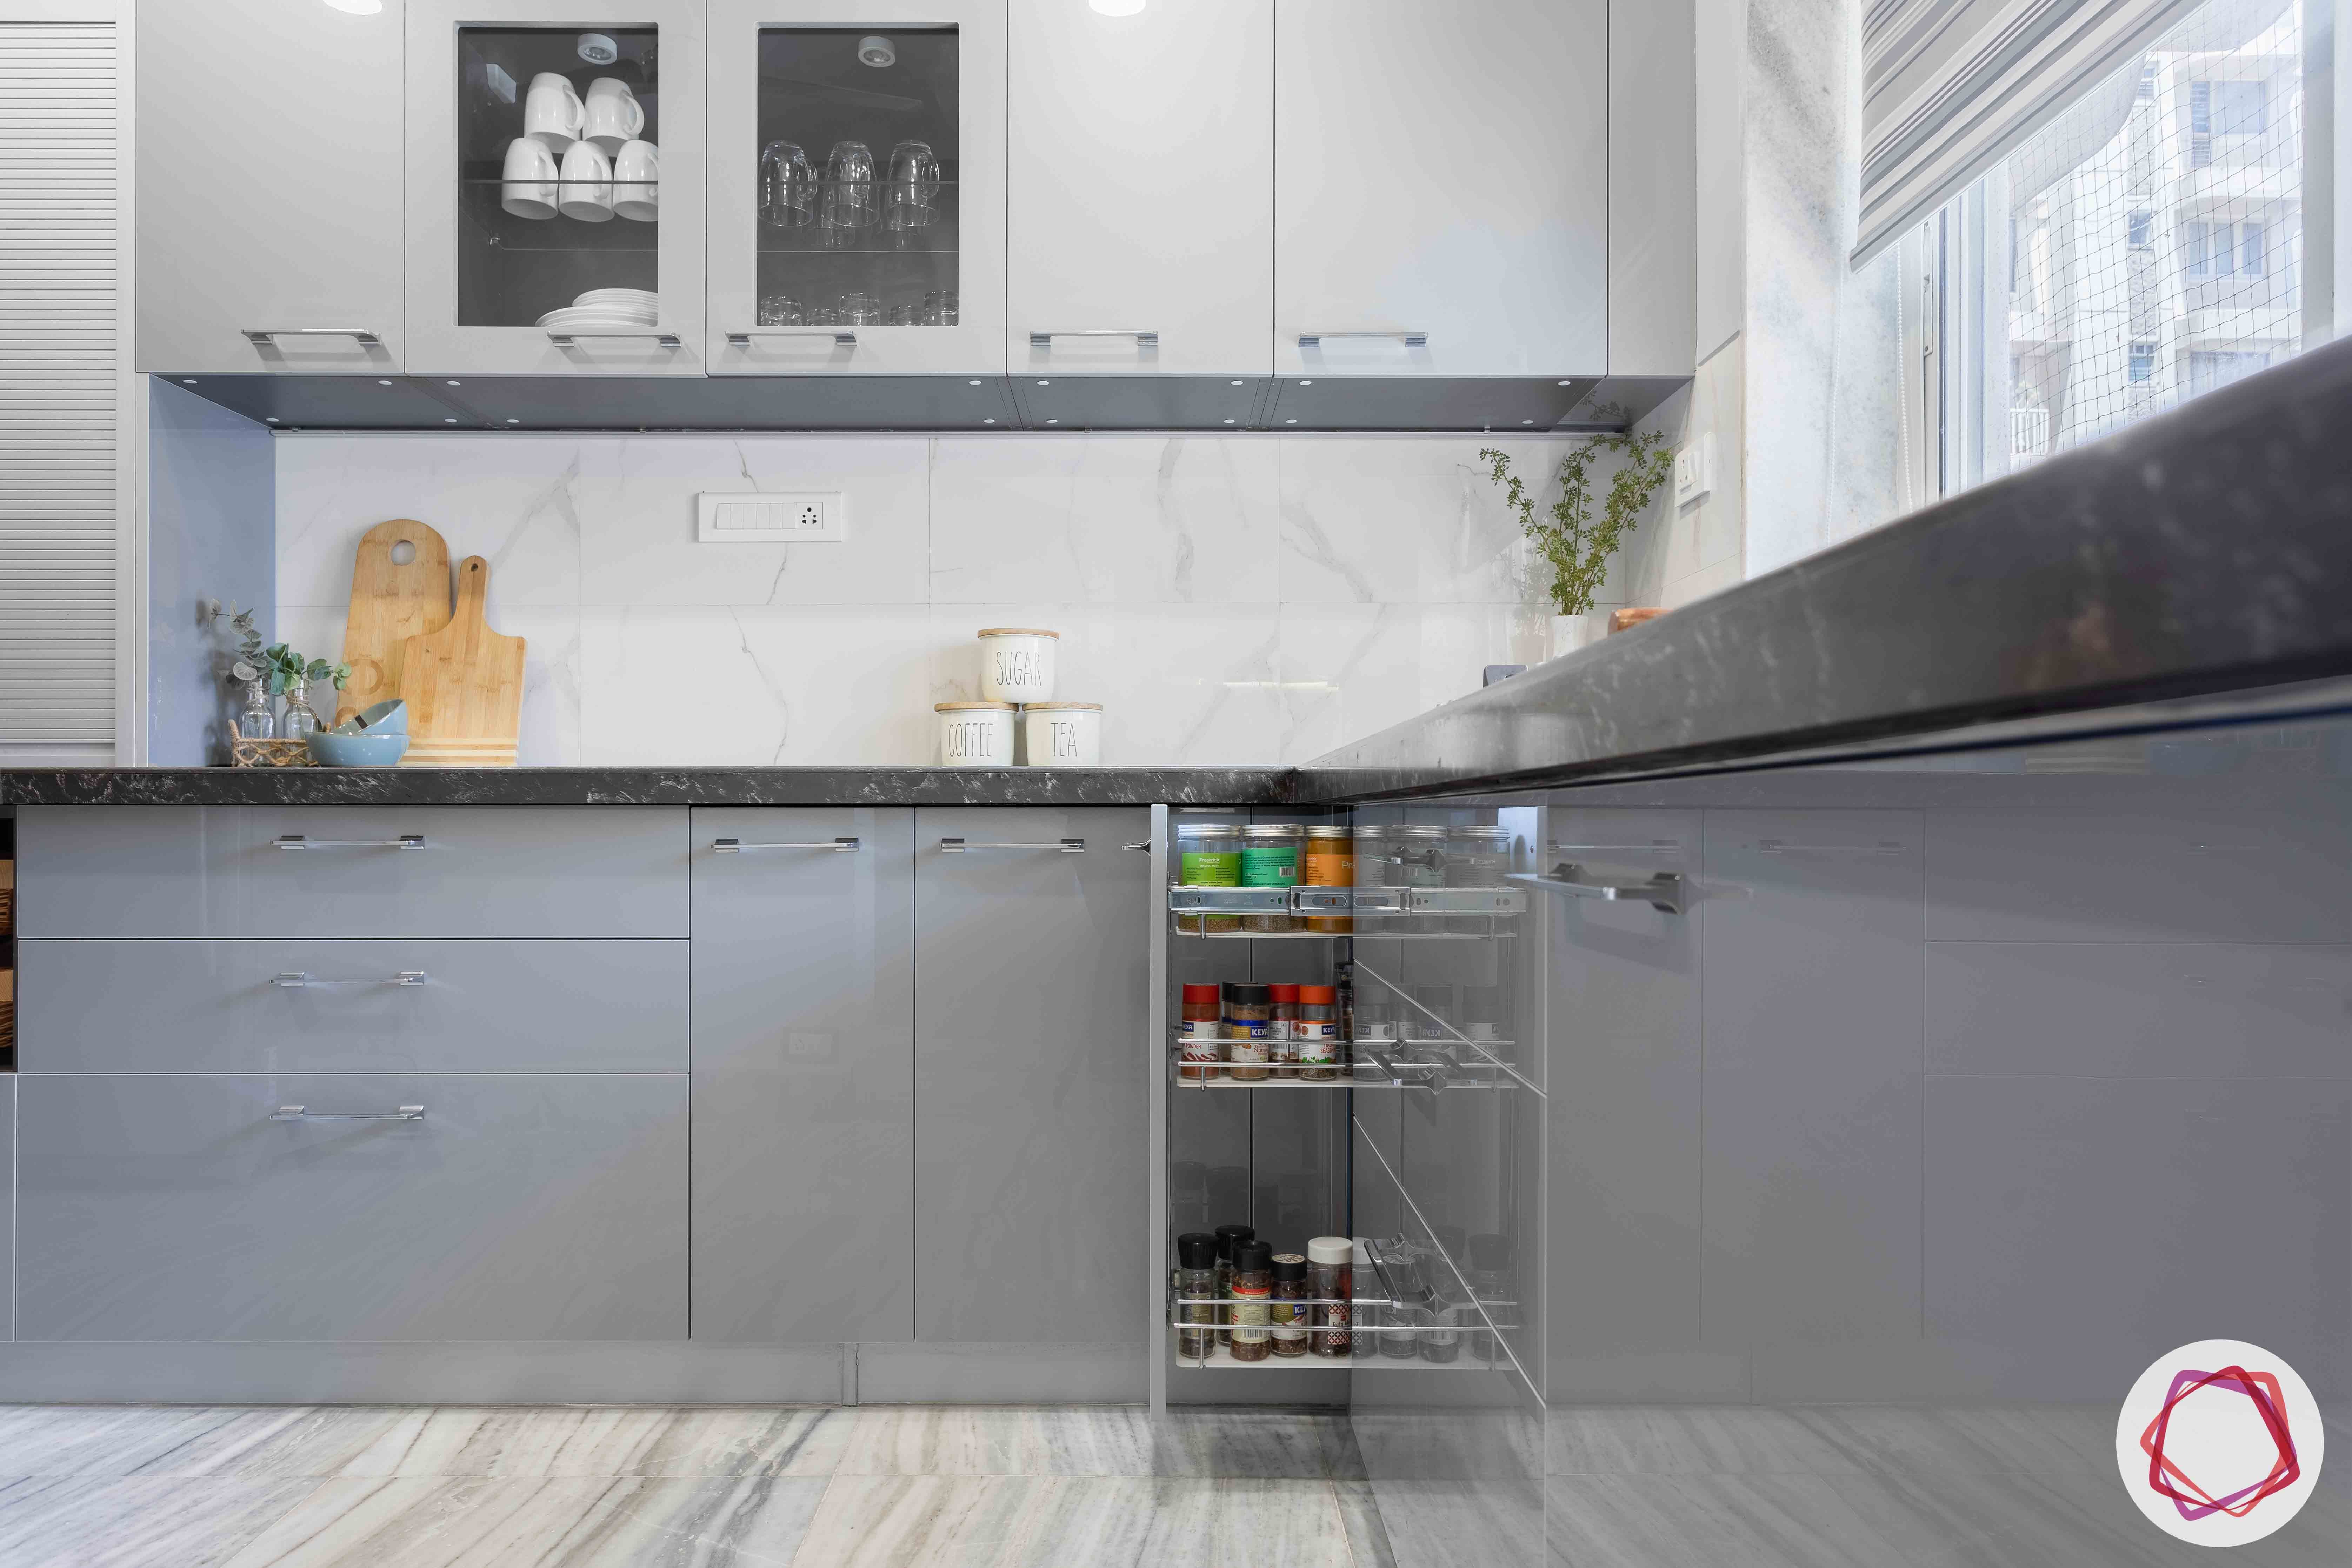 kitchen tiles-marble kitchen backsplash-grey kitchen cabinet designs